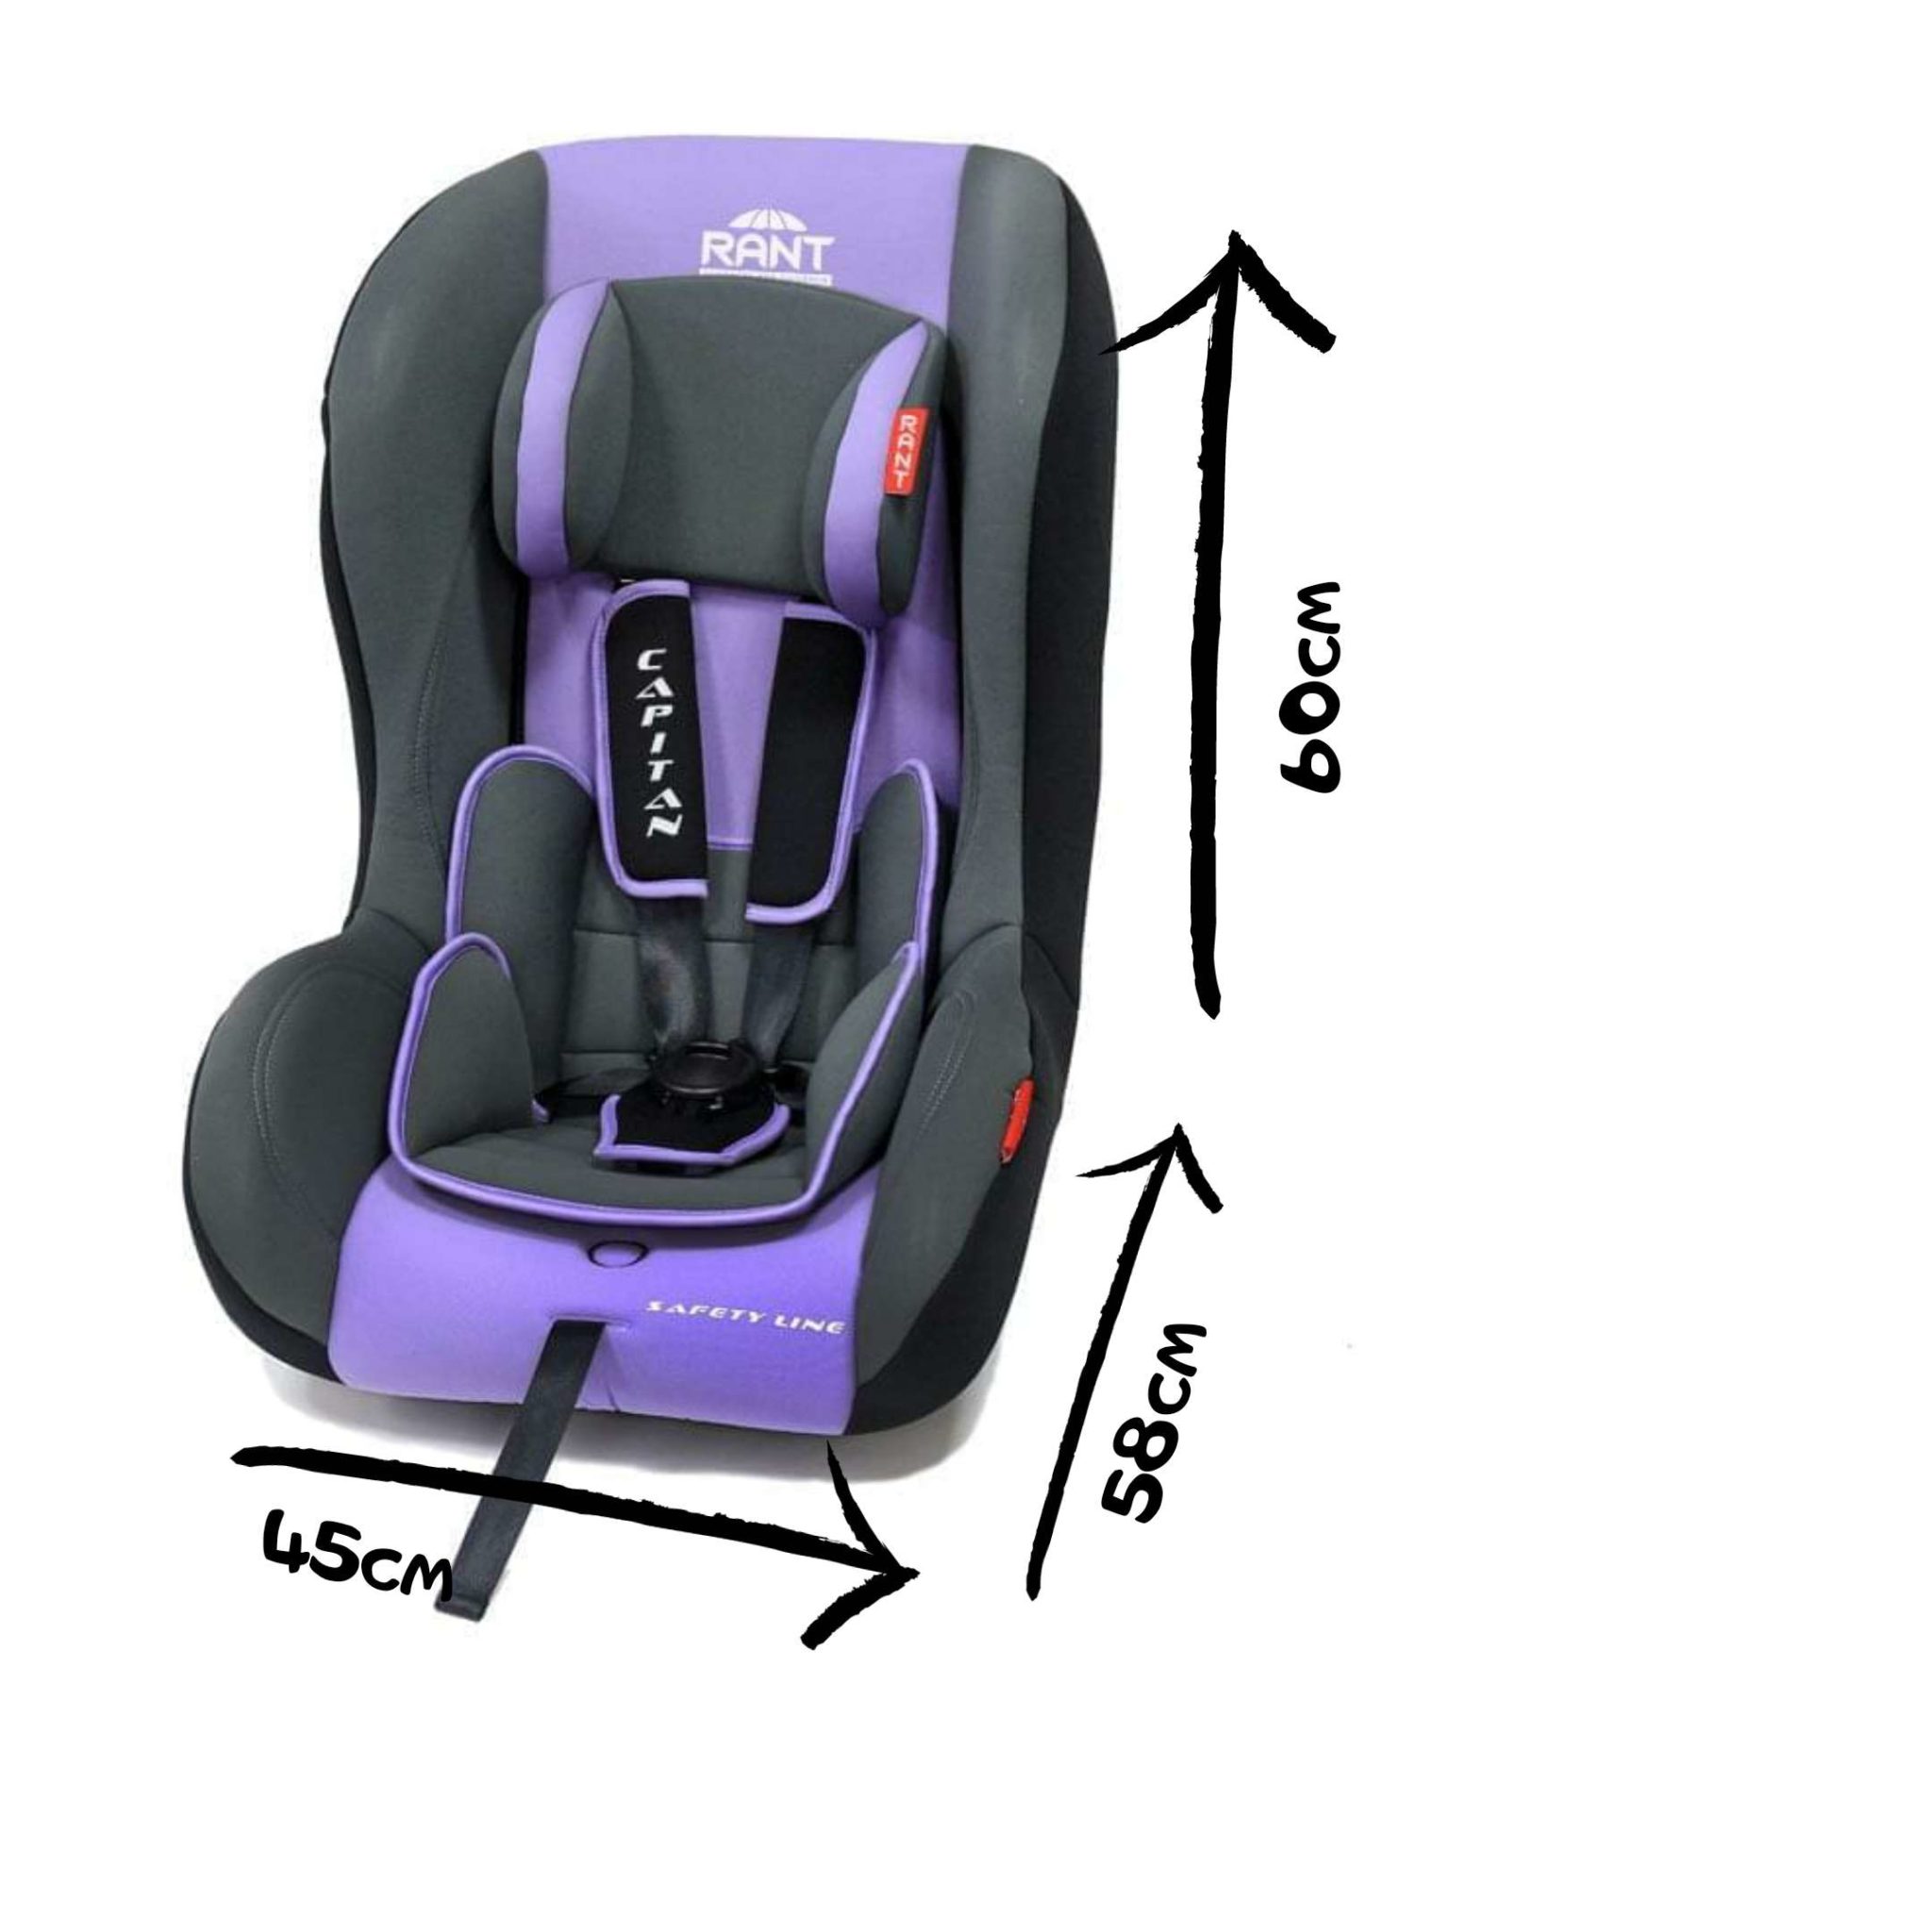 размер детского кресла для машины